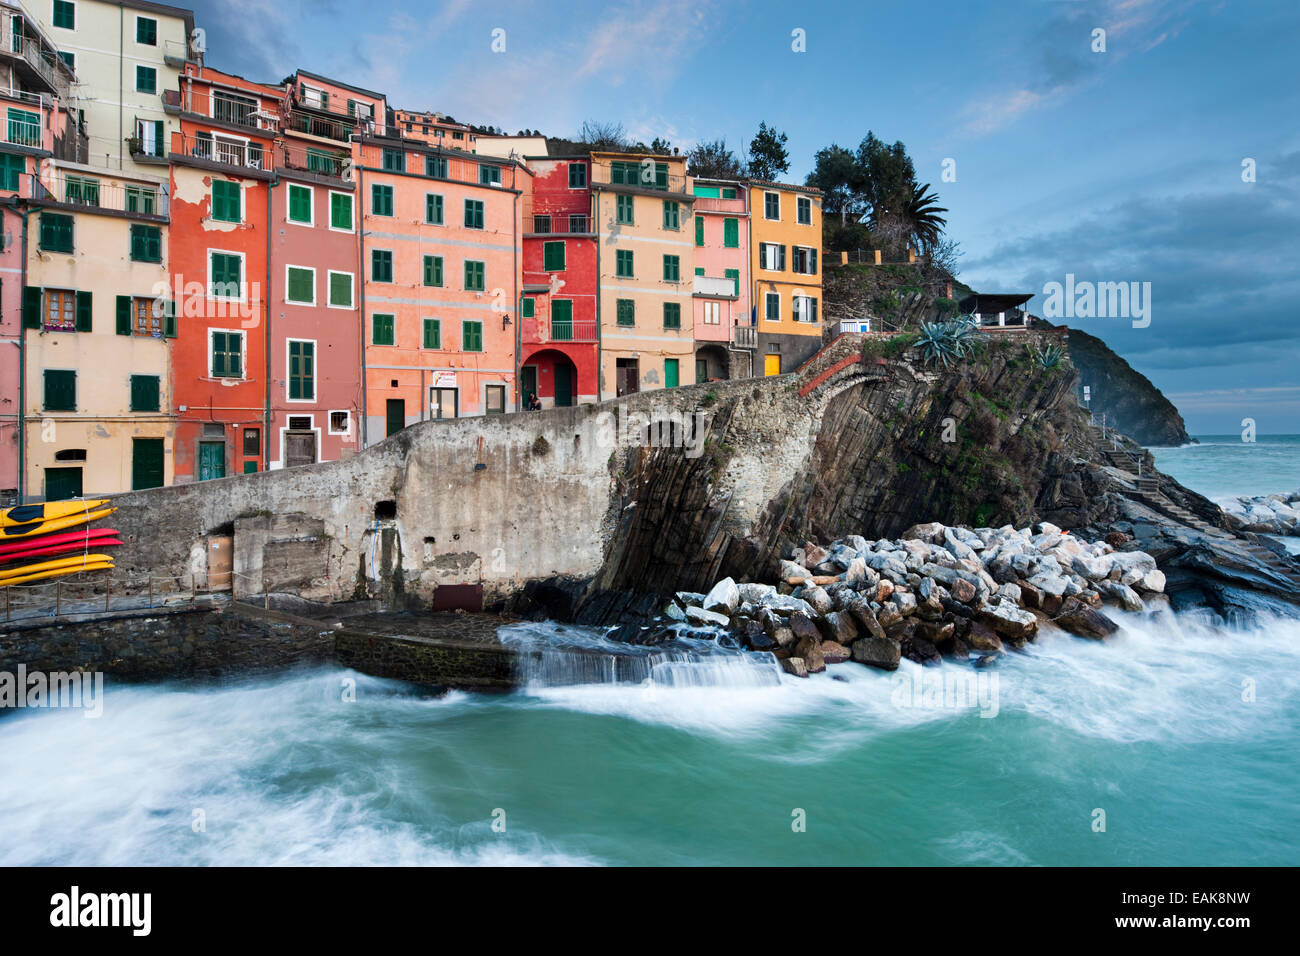 Maisons colorées sur la côte rocheuse, l'UNESCO Patrimoine Culturel Mondial, Riomaggiore, Cinque Terre, ligurie, italie Banque D'Images